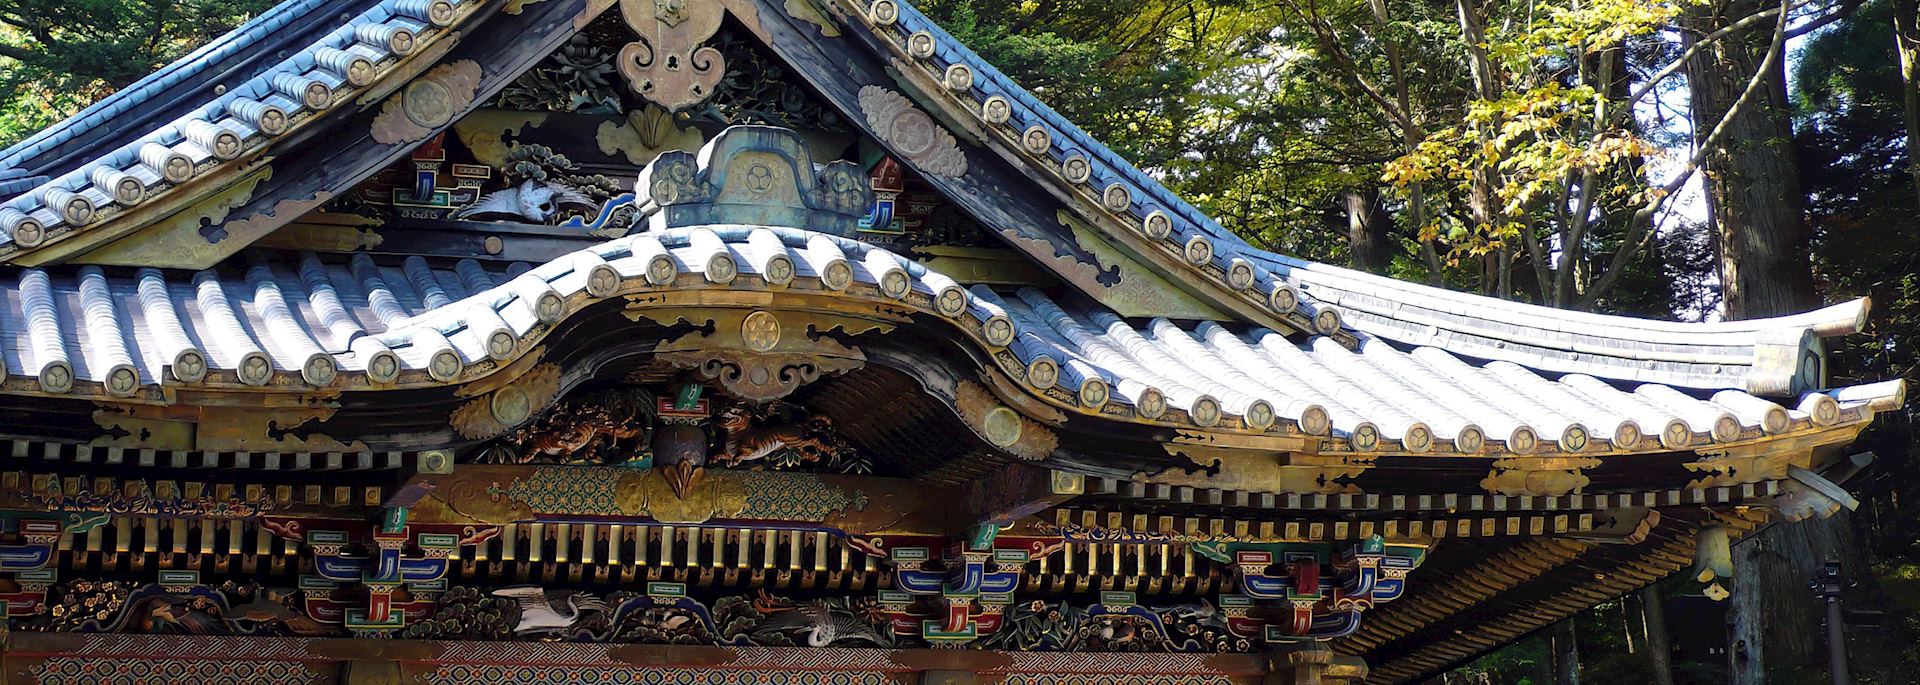 Shrine in Nikko, Tochigi Prefecture